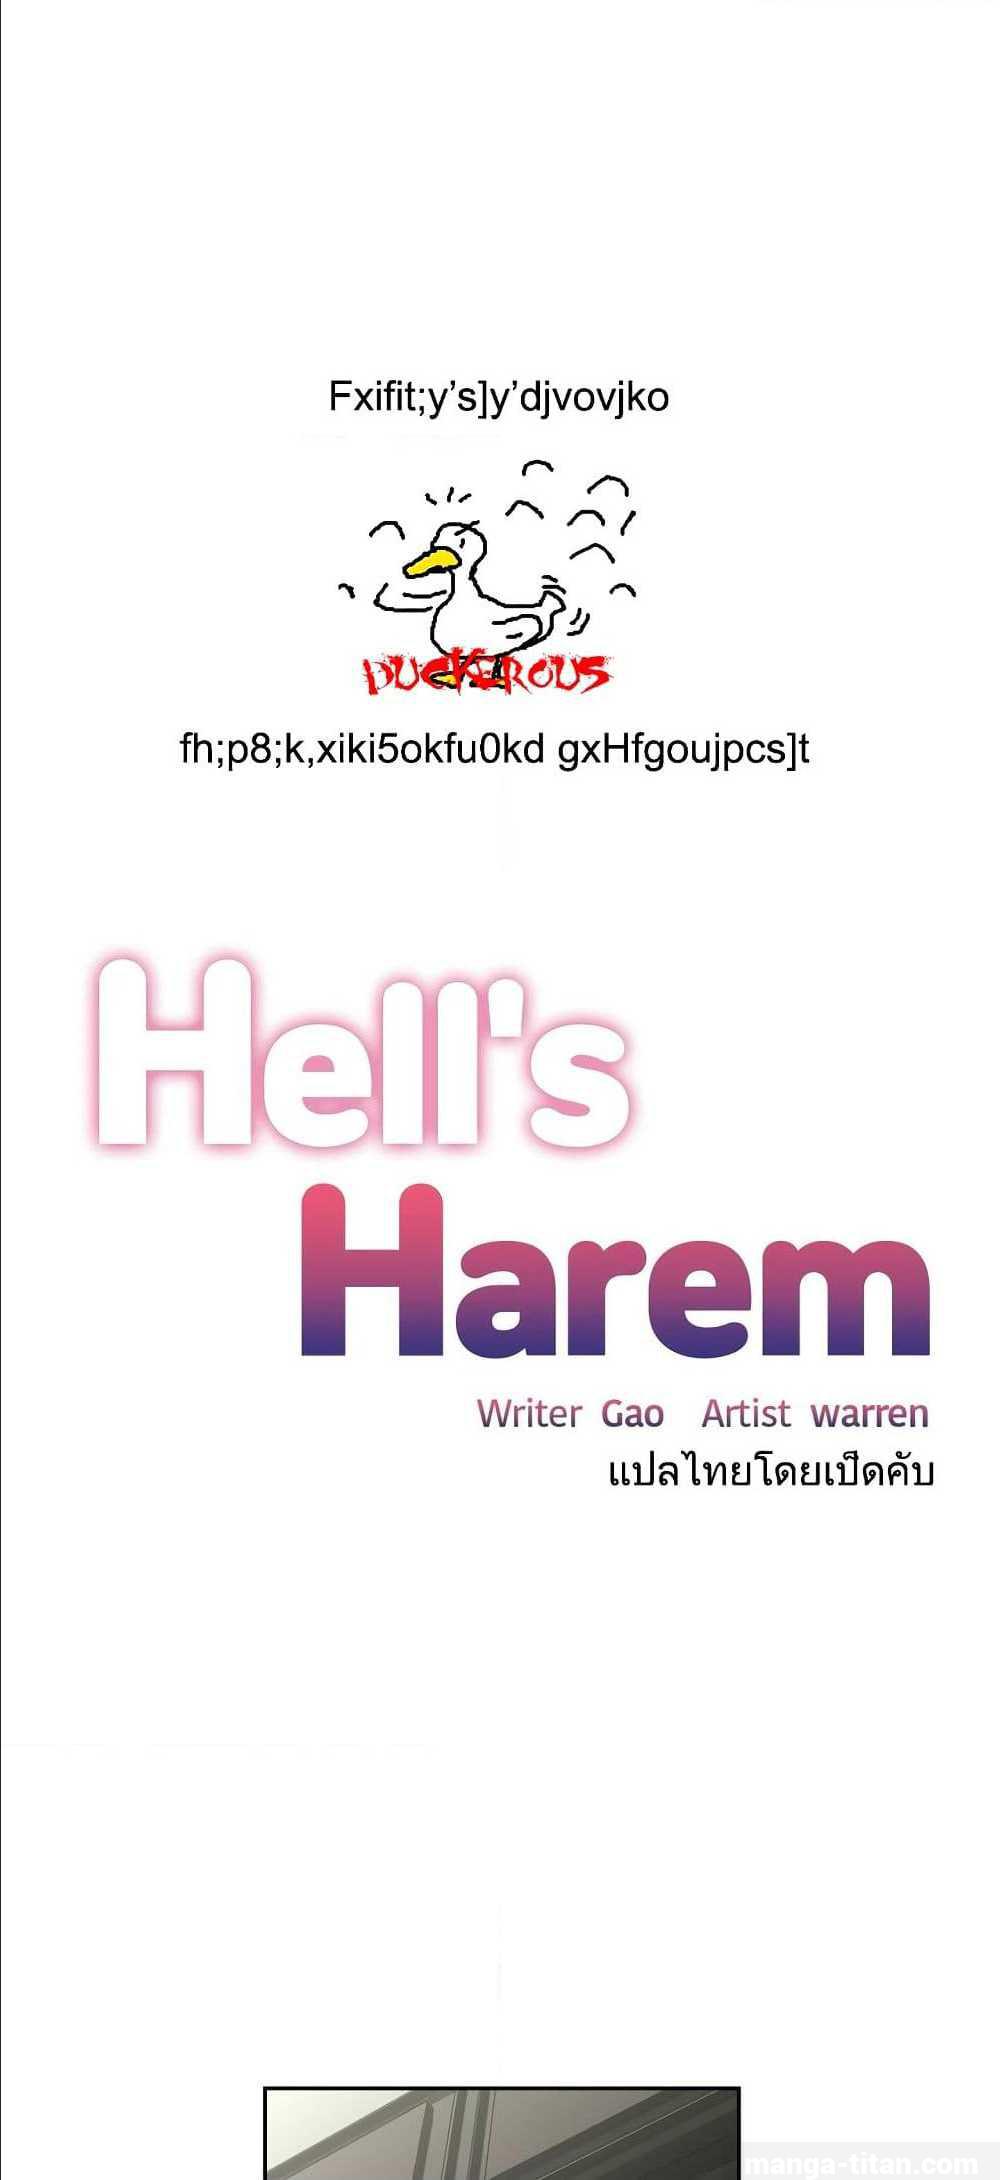 Hell’s Harem10 (1)